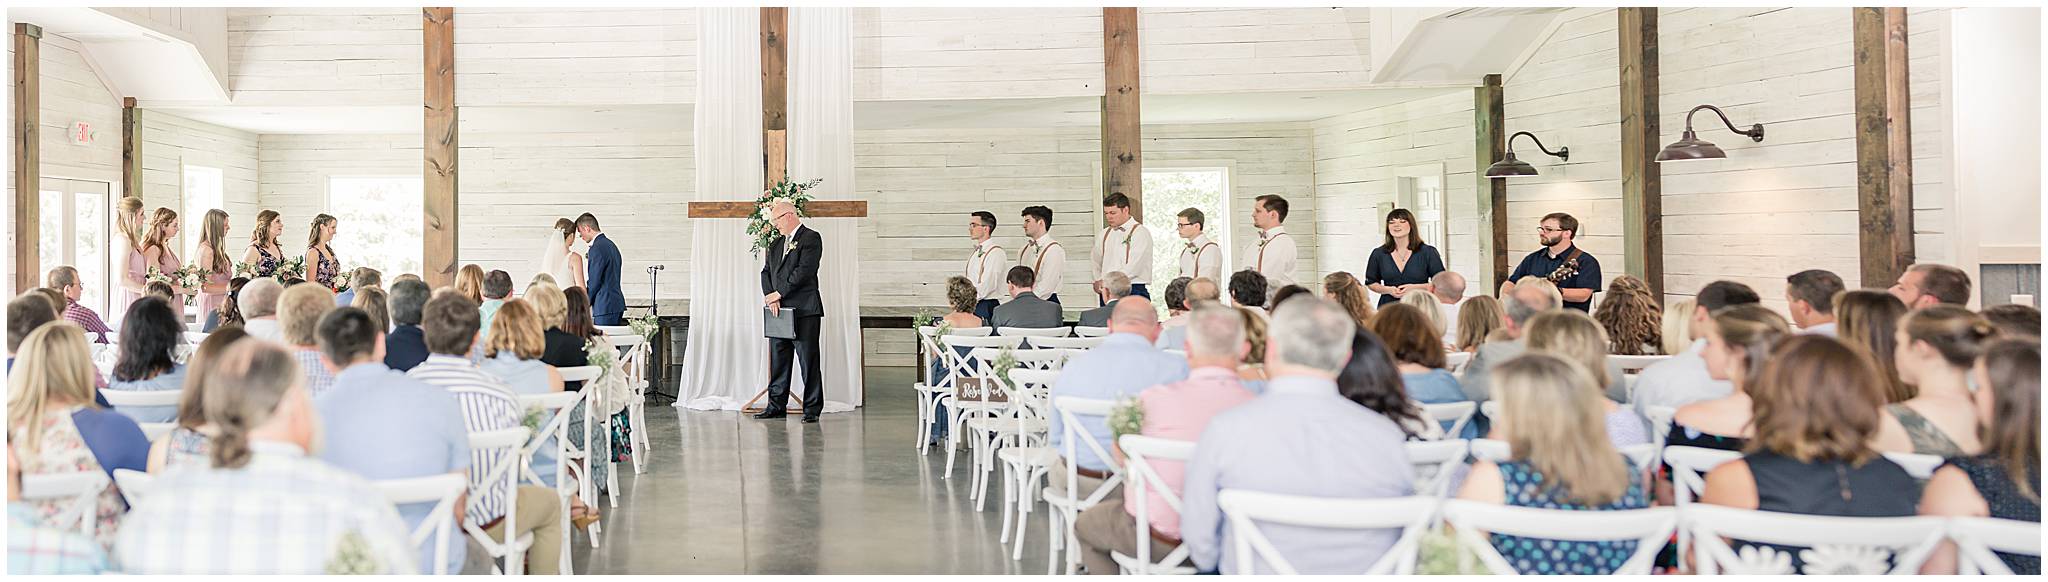 Copey Creek Wedding Ceremony Pictures Indoor